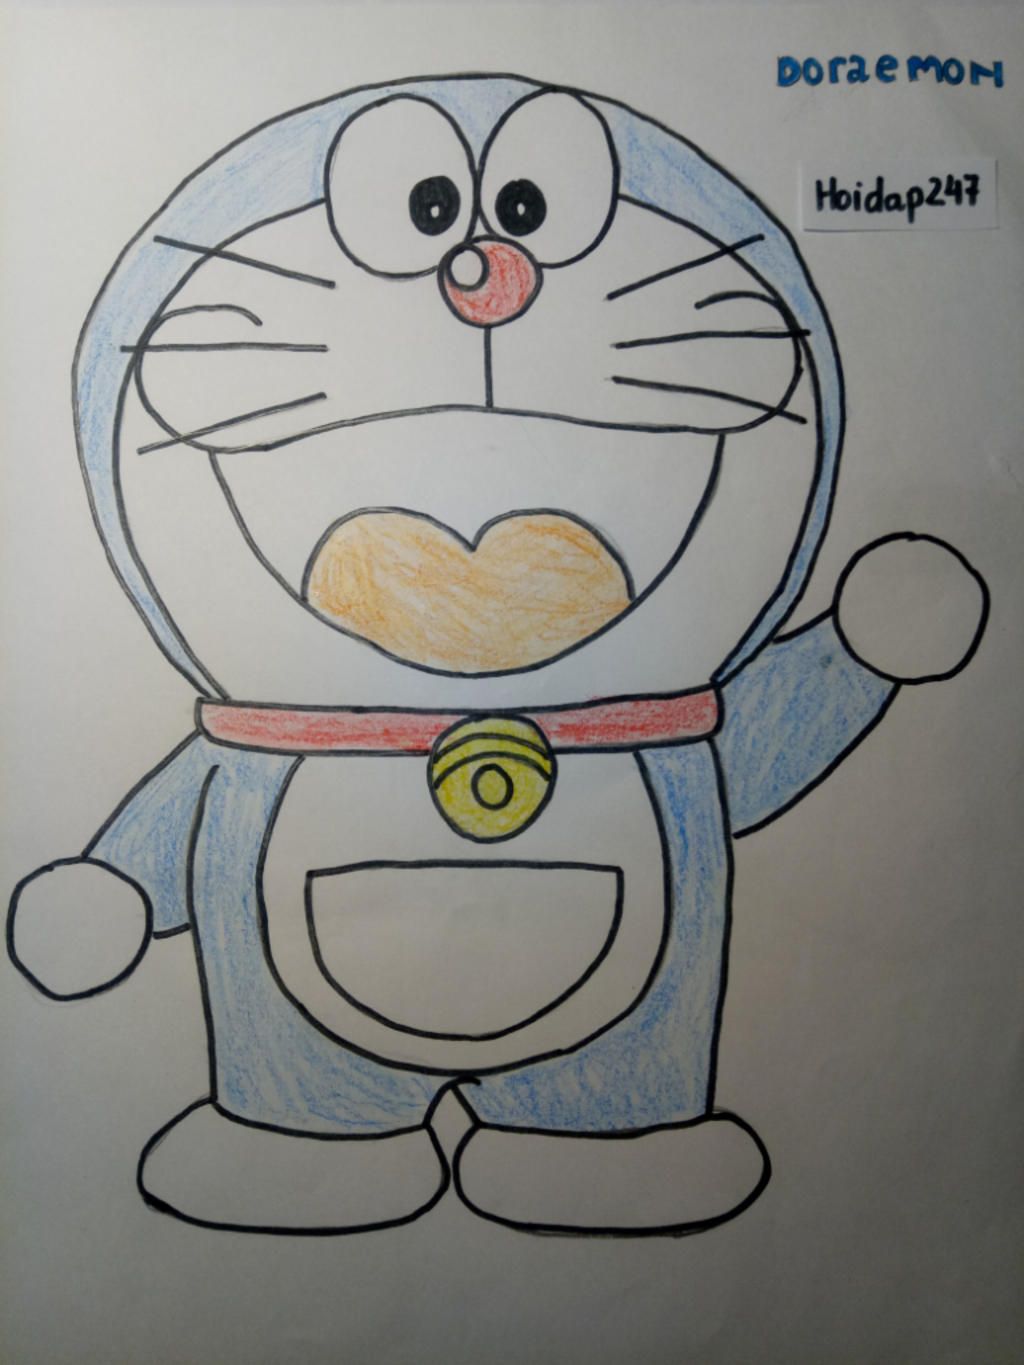 Hãy khám phá cách vẽ tranh Doraemon đáng yêu và đơn giản cùng chúng tôi. Với những lời chỉ dẫn chi tiết và hình ảnh thực tế, bạn sẽ trở thành một họa sĩ vẽ Doraemon đích thực trong thời gian ngắn nhất.